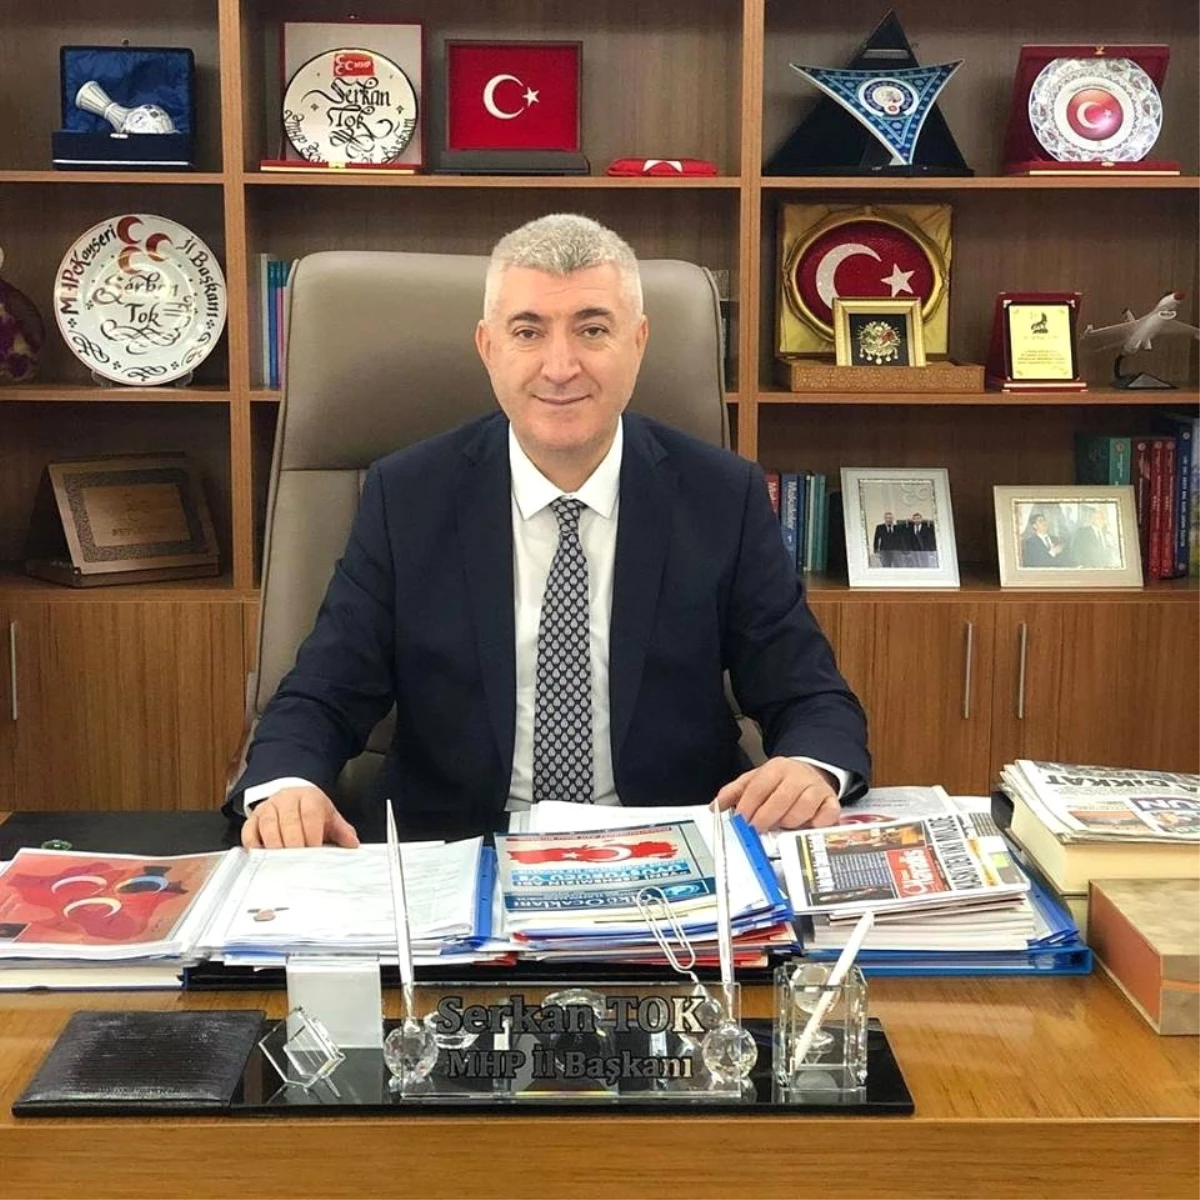 MHP Kayseri İl Başkanı Serkan Tok, 23 Nisan Ulusal Egemenlik ve Çocuk Bayramını Kutladı